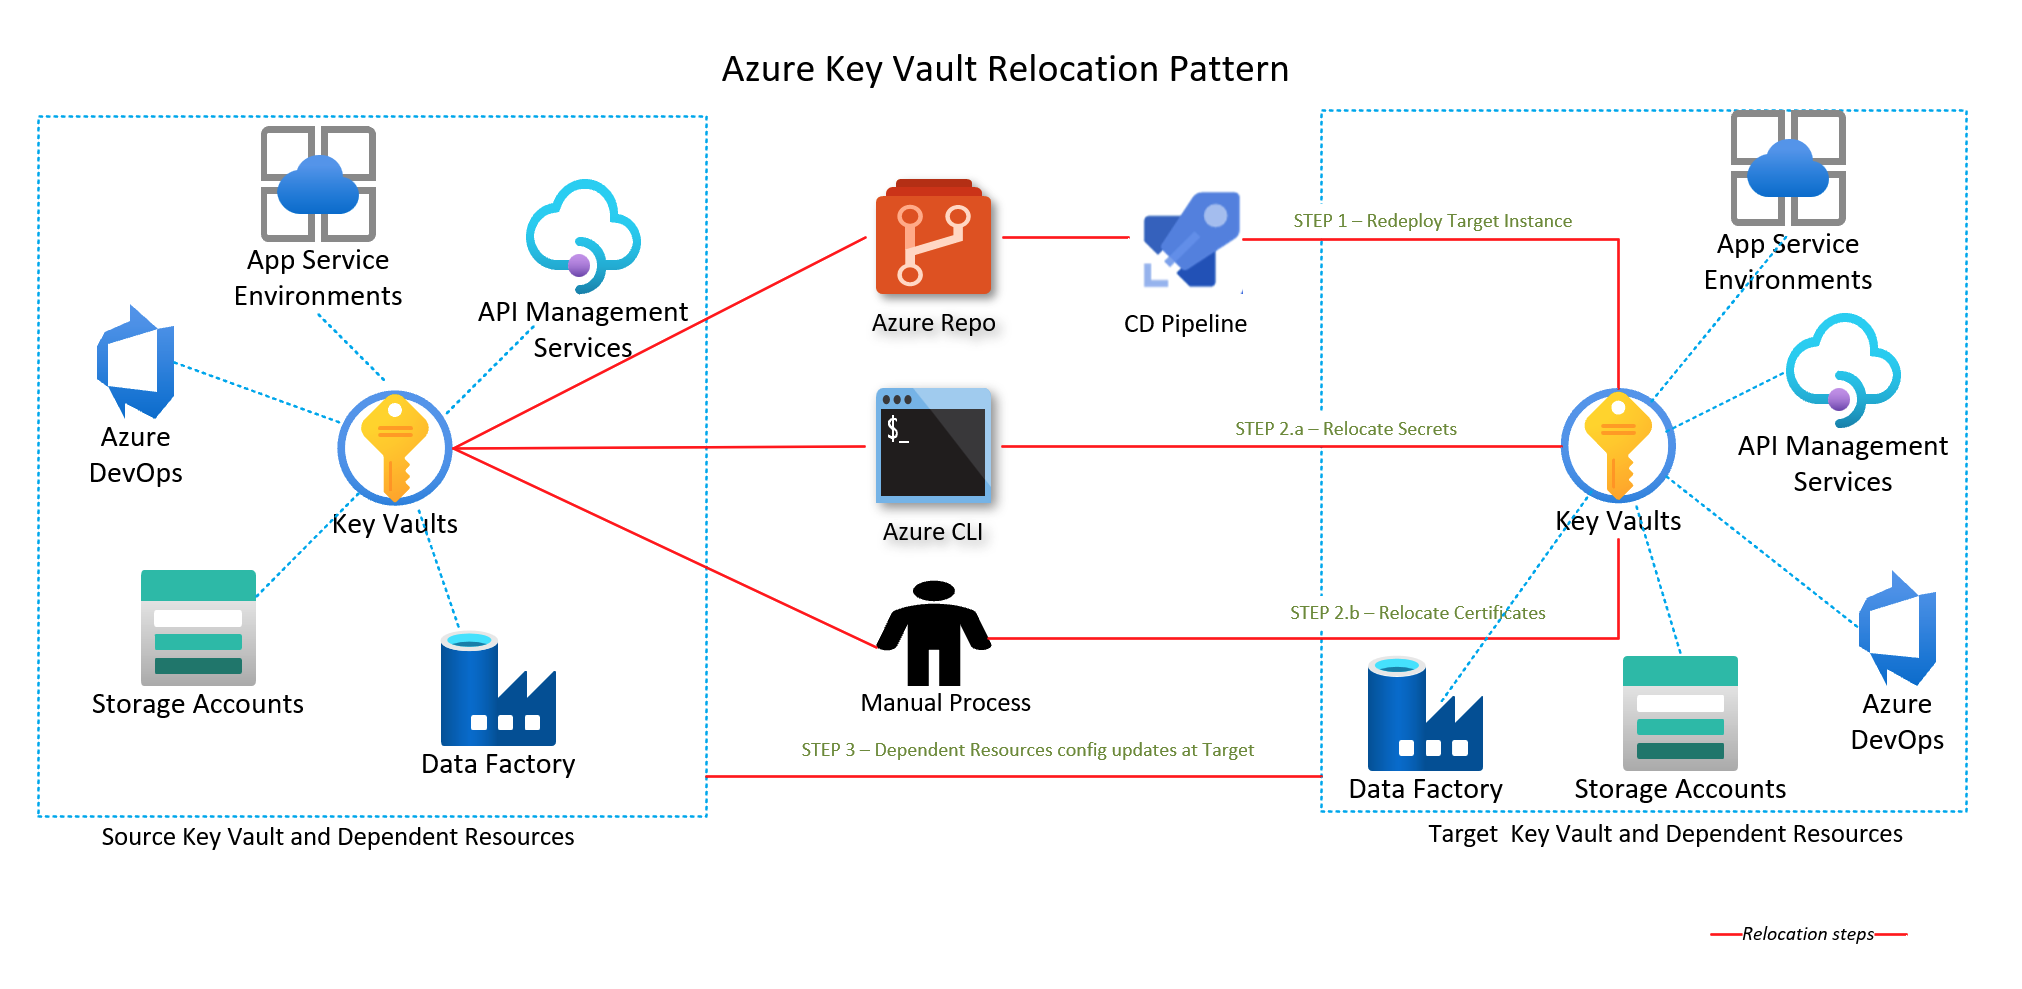 Diagramme montrant le modèle de relocalisation d’un coffre de clés Azure